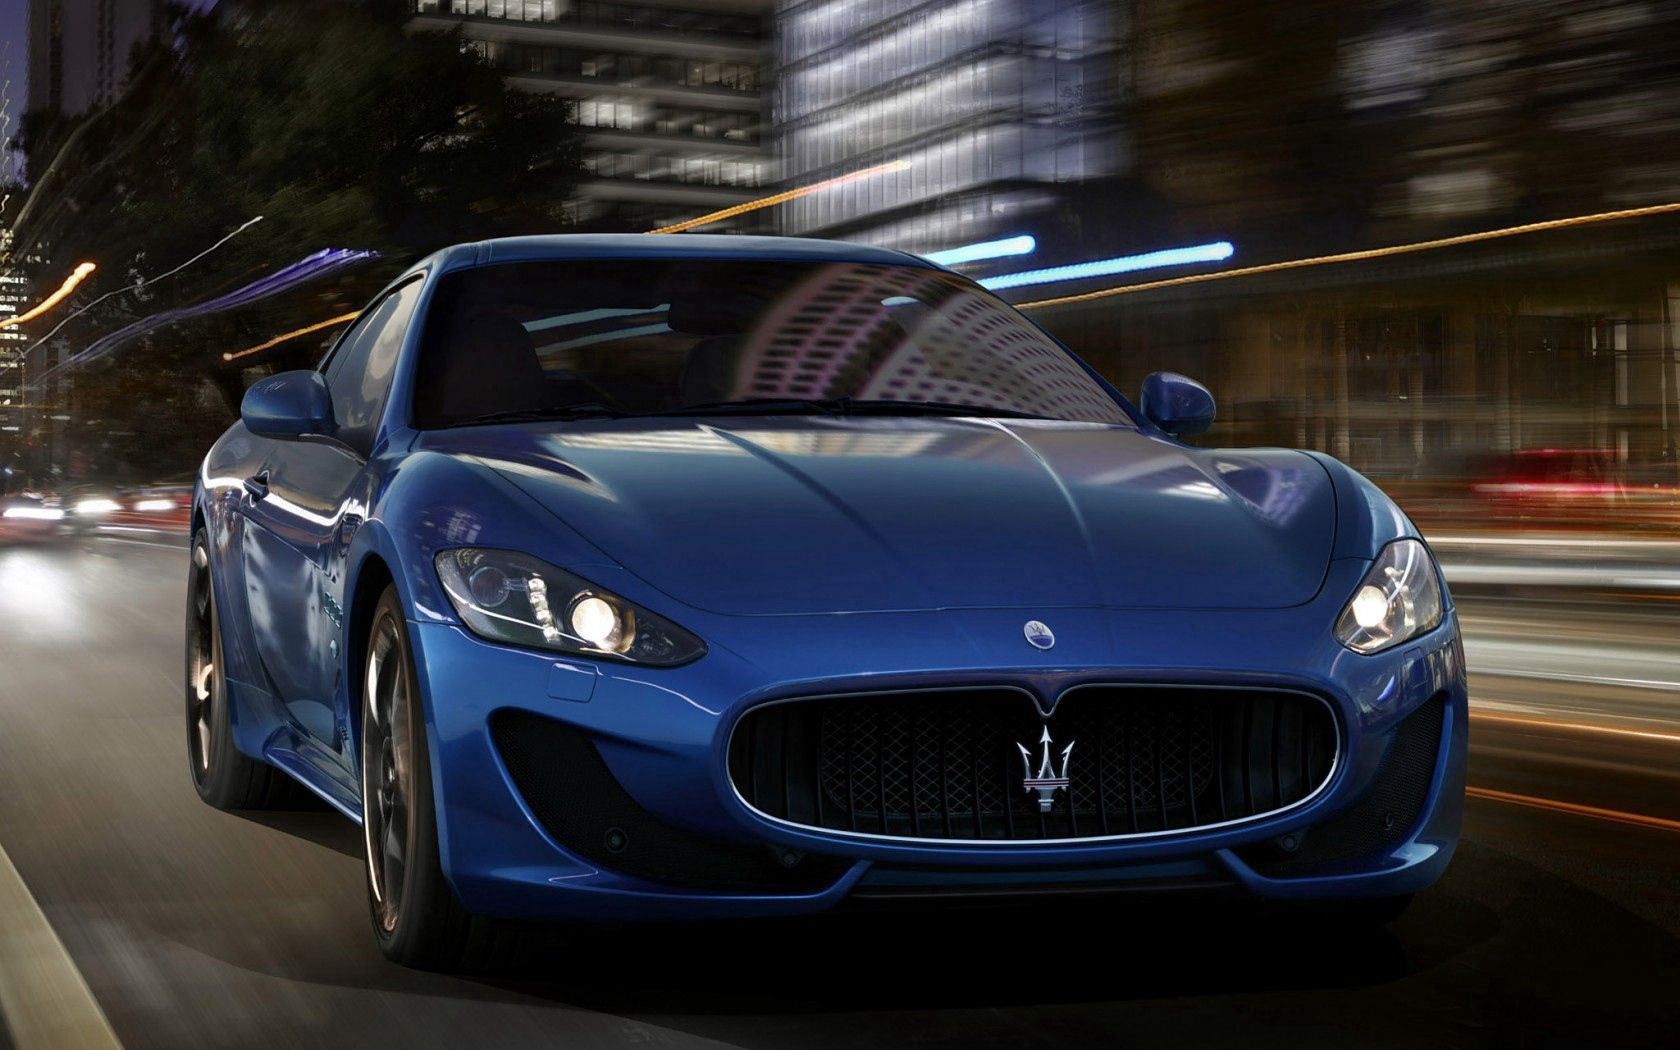 Descarga gratuita de fondo de pantalla para móvil de Un Coche, Maserati, Coches, Velocidad, Máquina, Calle.